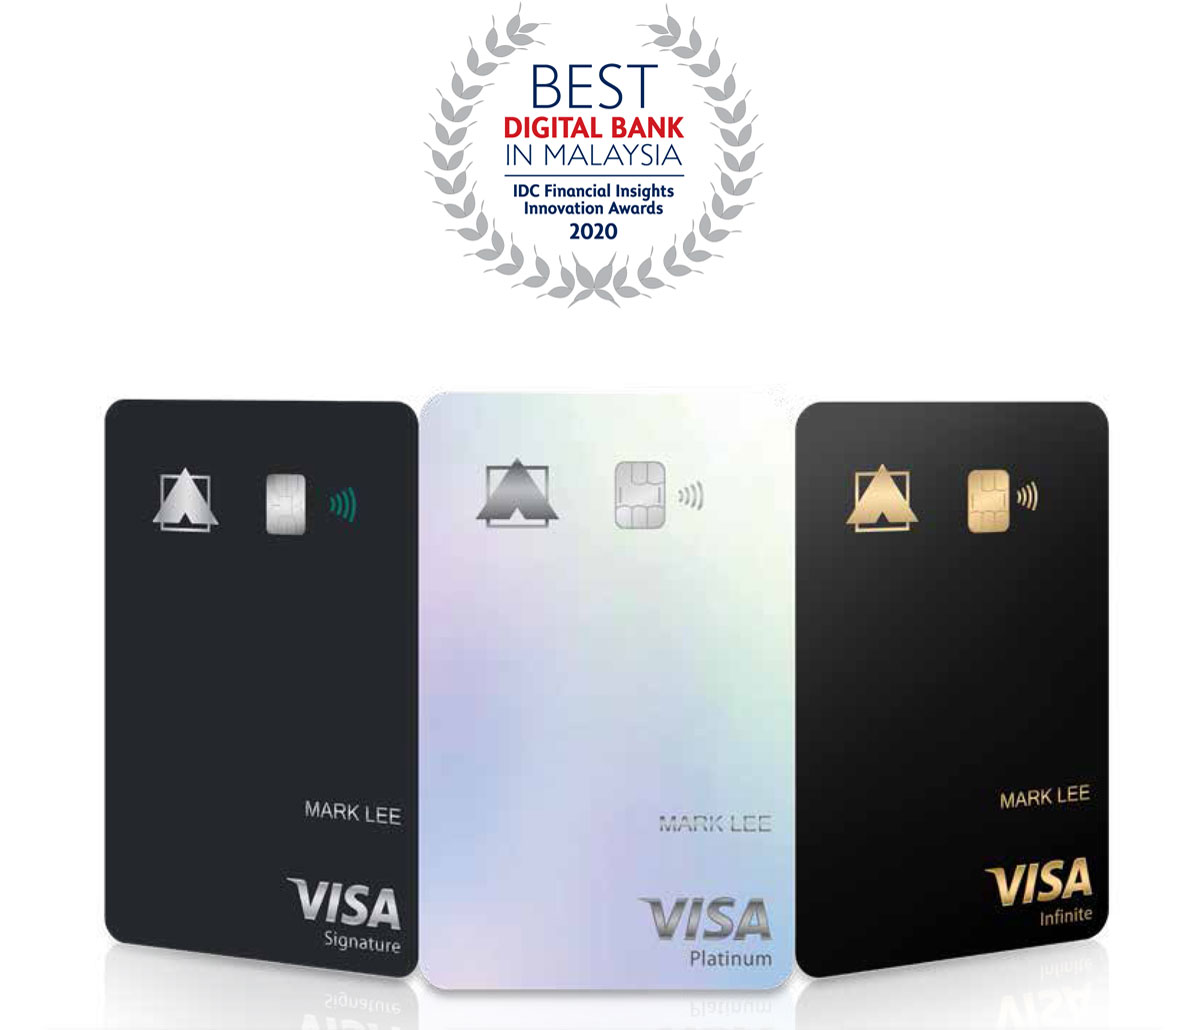 Three Credit Cards - Signature, Platinum and Infinite